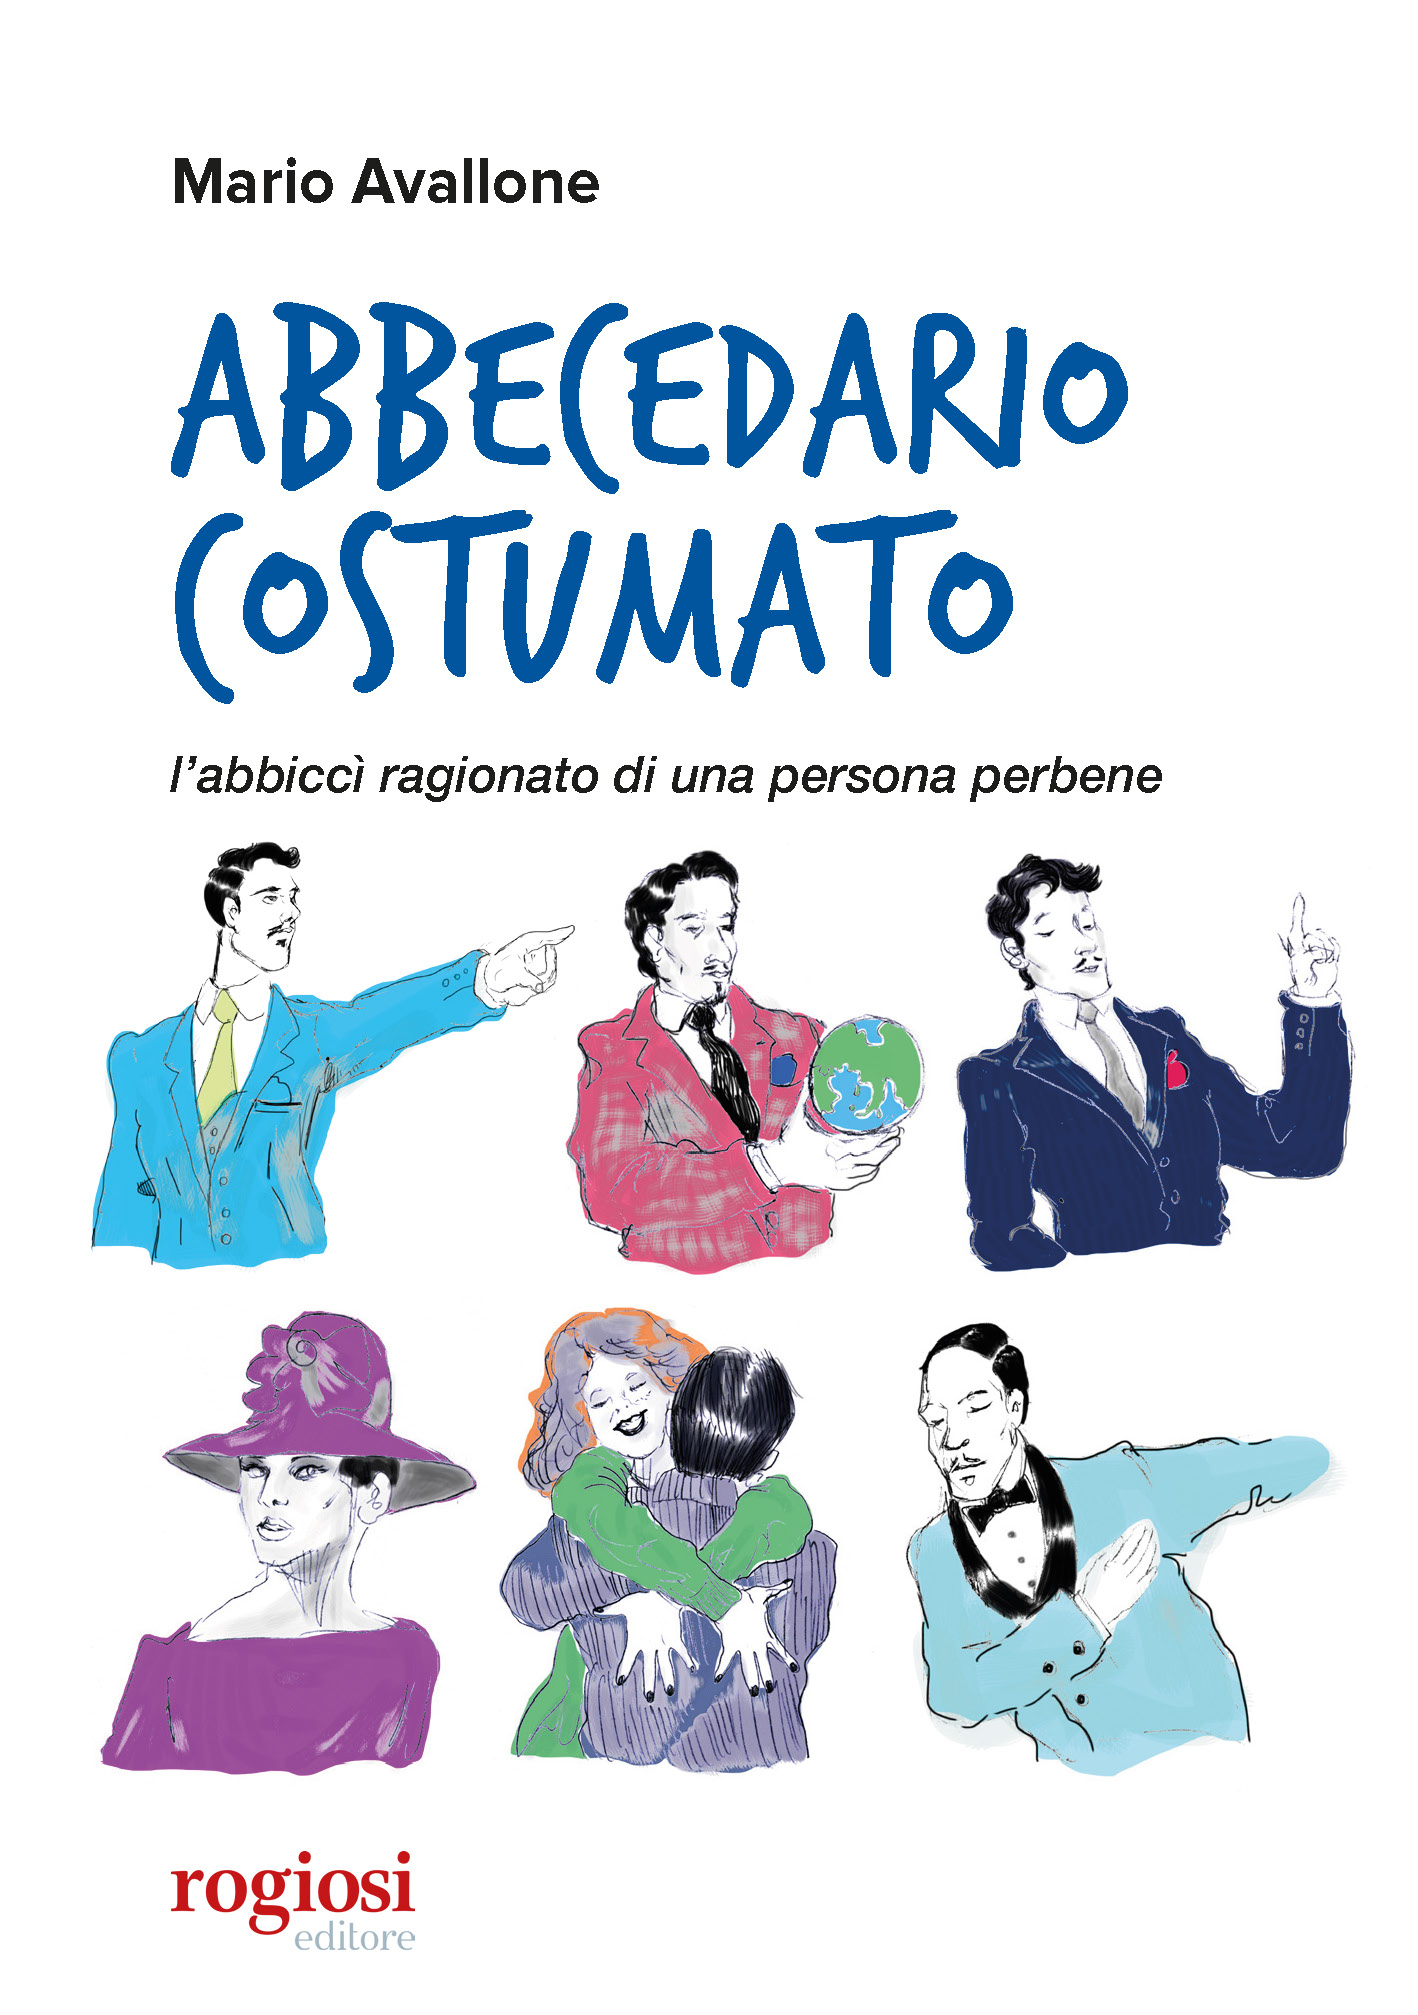 ‘Abbecedario costumato’ di Mario Avallone per Rogiosi Editore. Presentazione del libro giovedì 26 al Gambrinus di Napoli